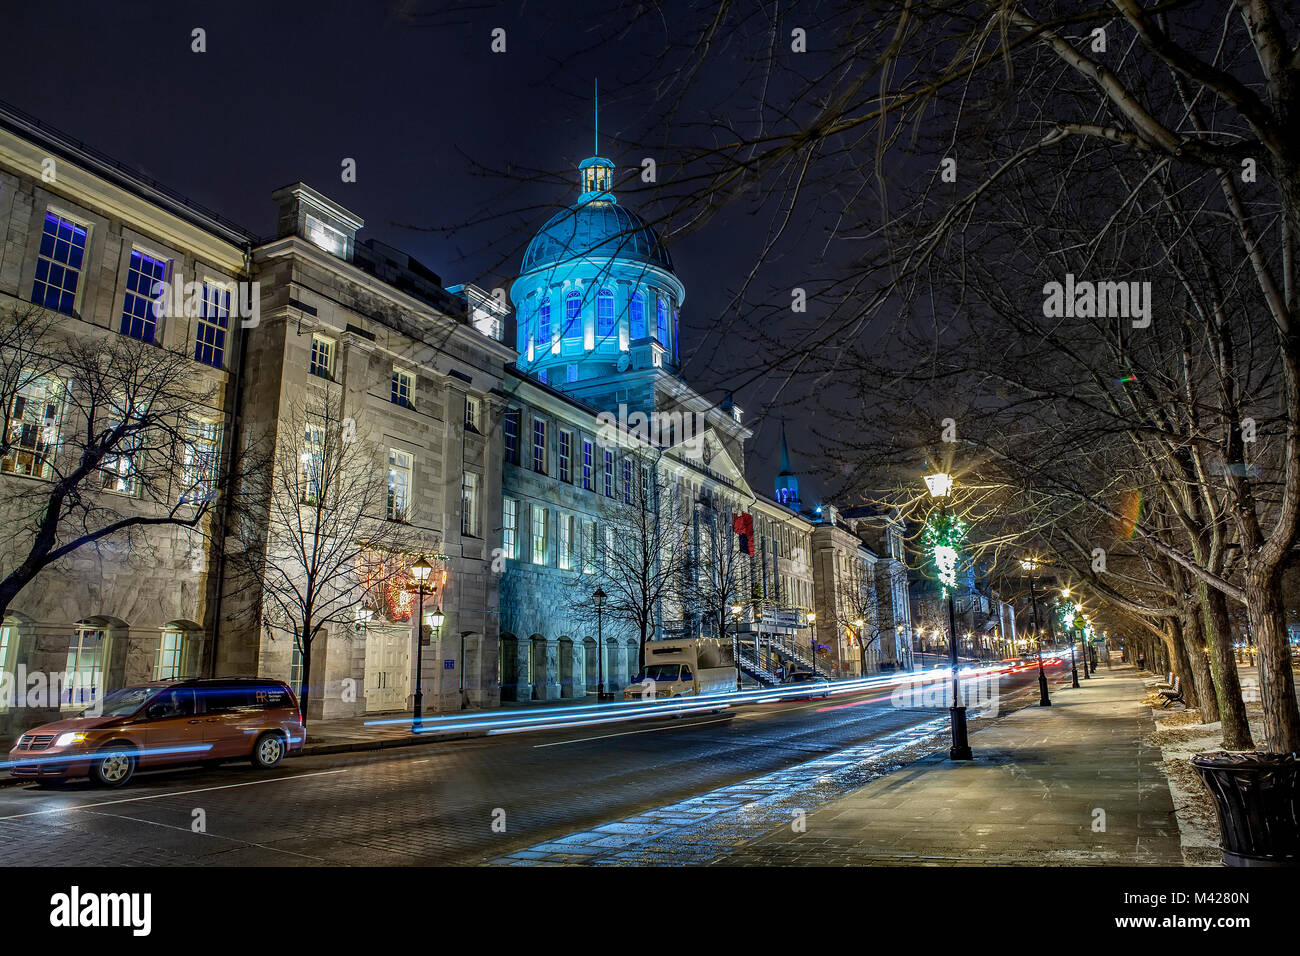 La fachada del edificio del mercado Bonsecures. La cúpula de estilo Palladian está iluminada en azul. Vista es a lo largo de la rue Saint-Paul est en la noche. Foto de stock